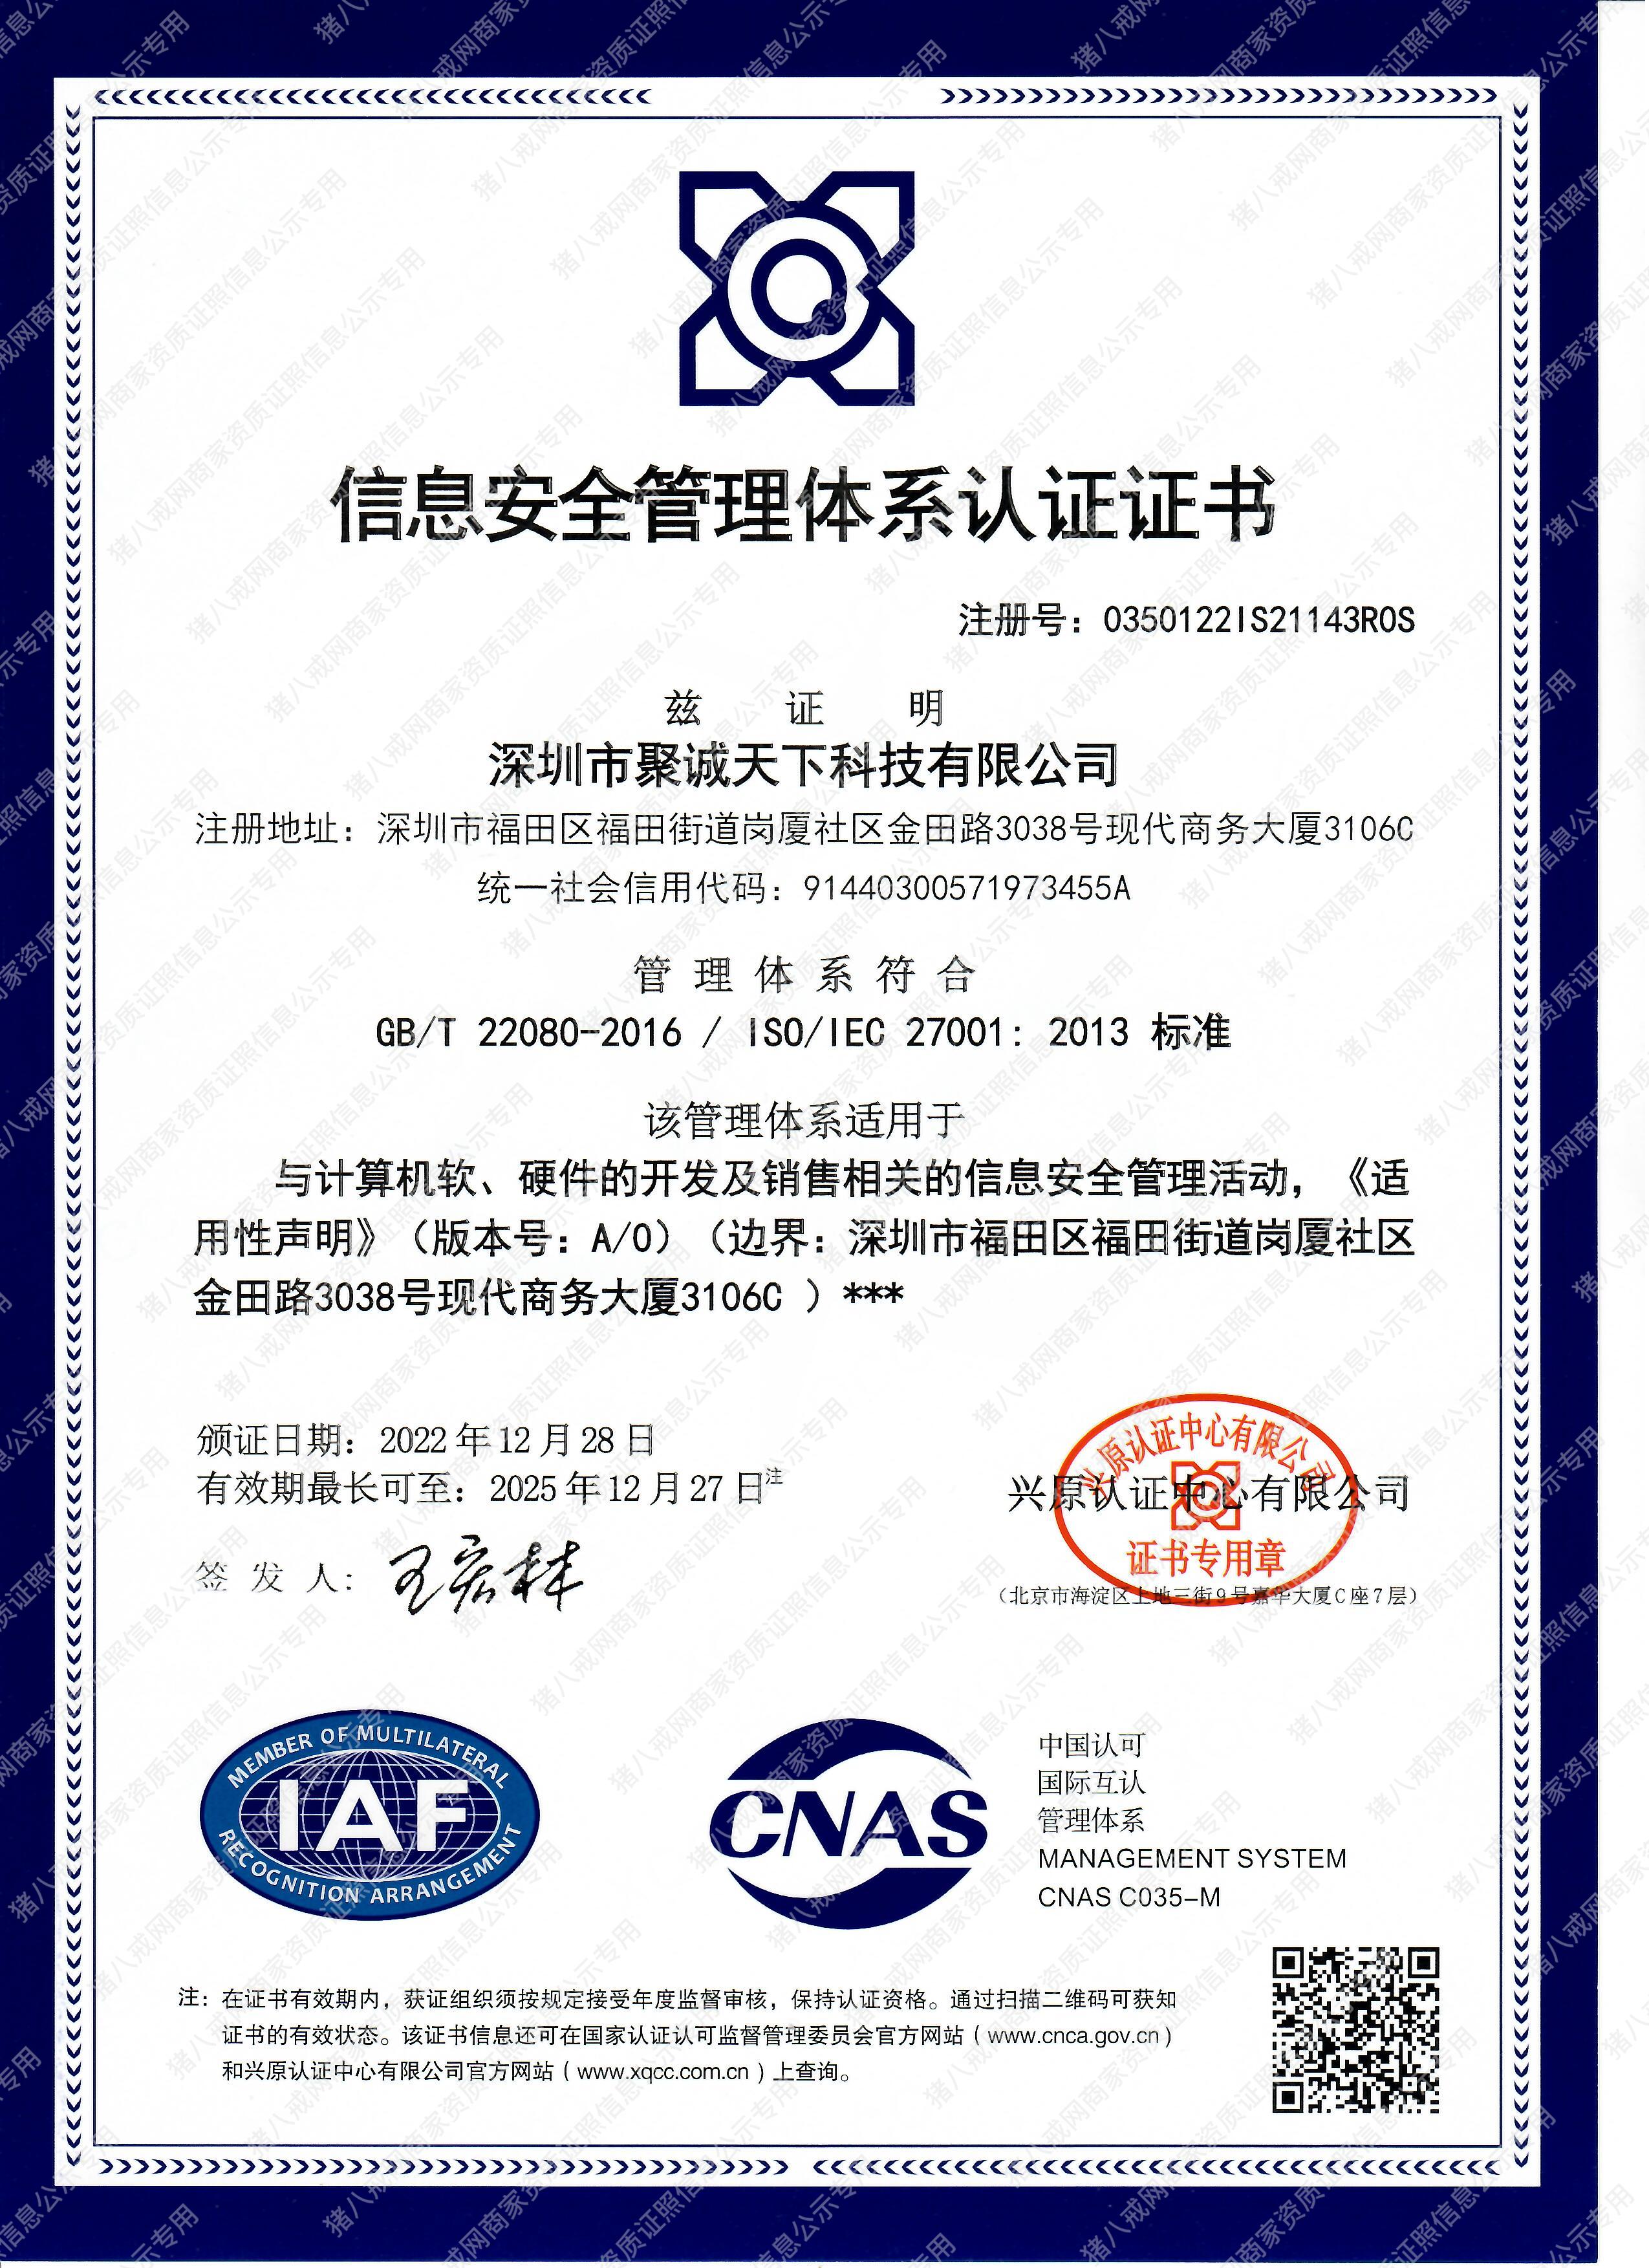 27001信息安全管理体系认证证书